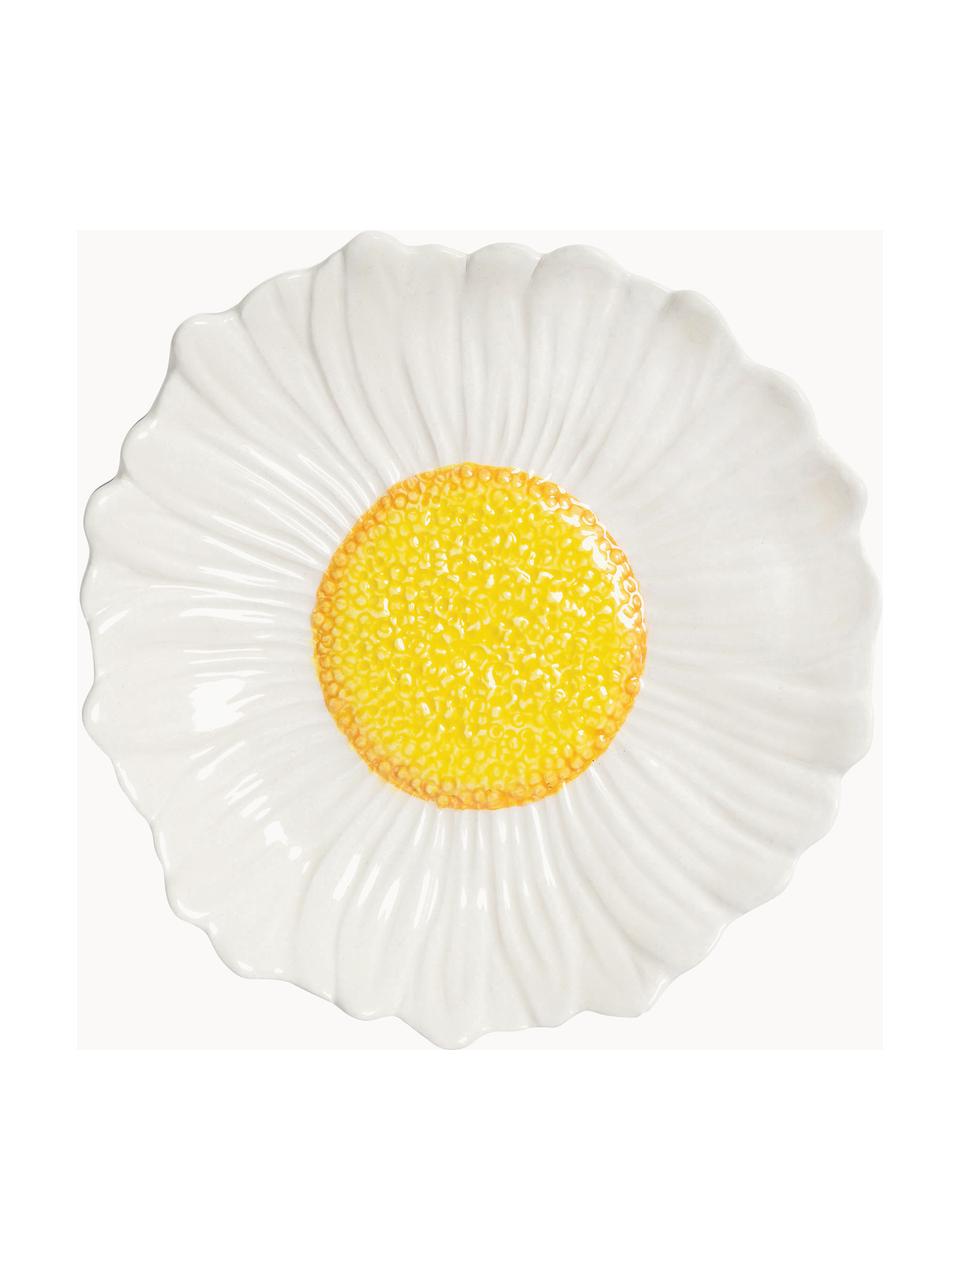 Coupe en forme de marguerite Flower, Grès cérame, émaillé, Blanc, jaune soleil, forme marguerite, Ø 18 x haut. 4 cm